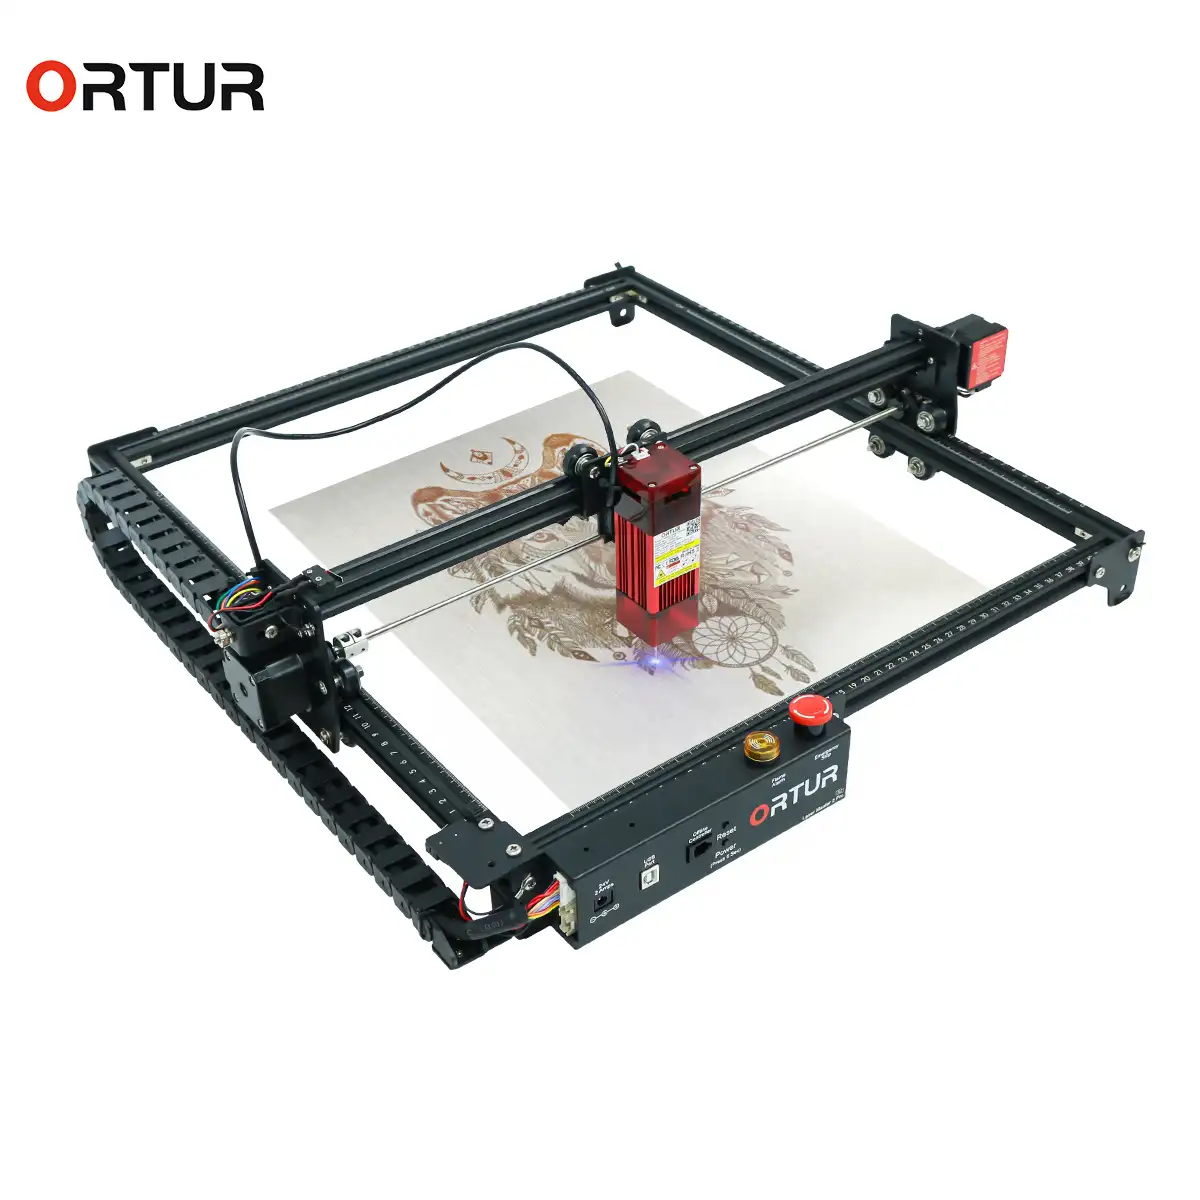 Ortur Frame DIY Compressed Spot Schnelle hochpräzise CNC YRR Laser gravur maschine